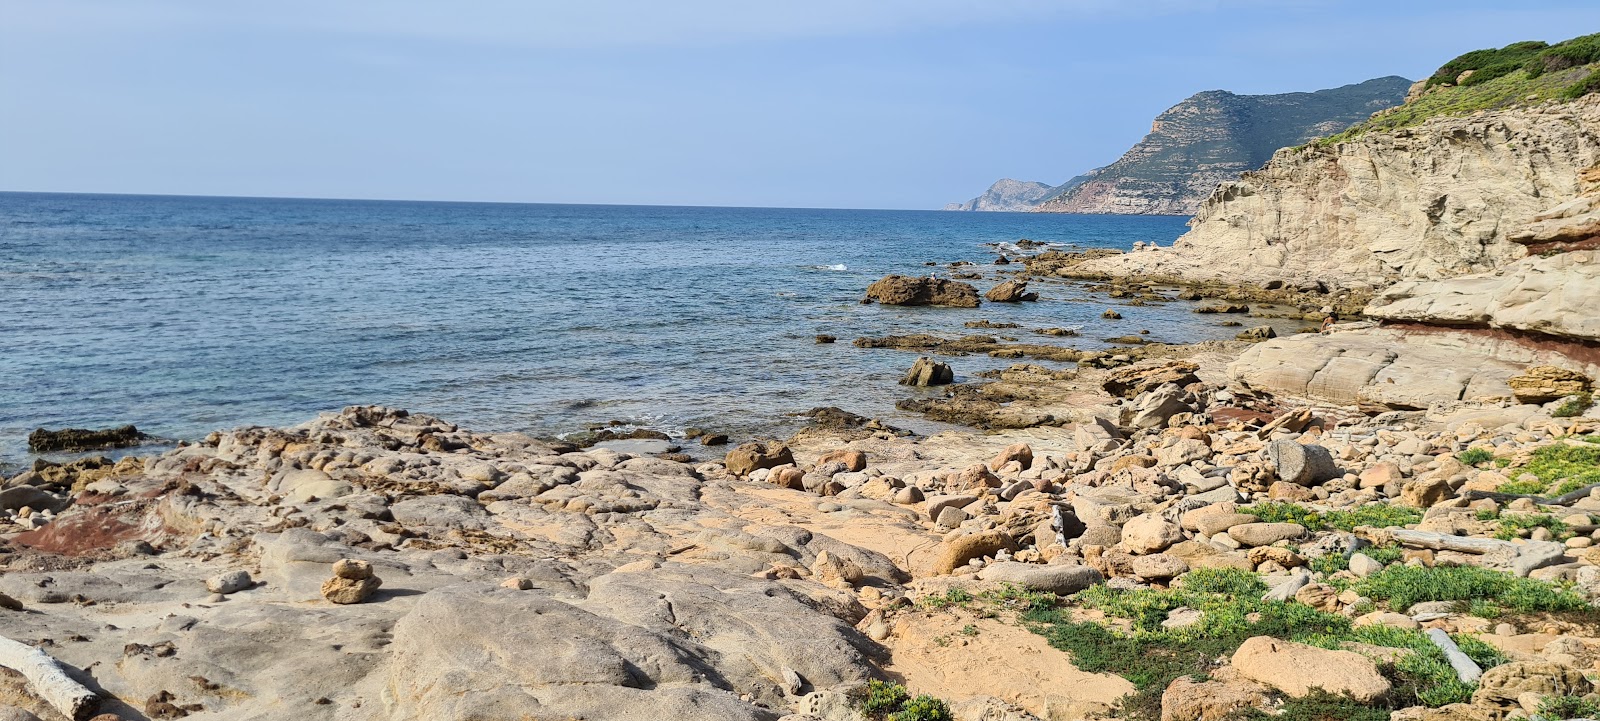 Photo of Spiaggetta a nord di Cala del Turco with short straight shore